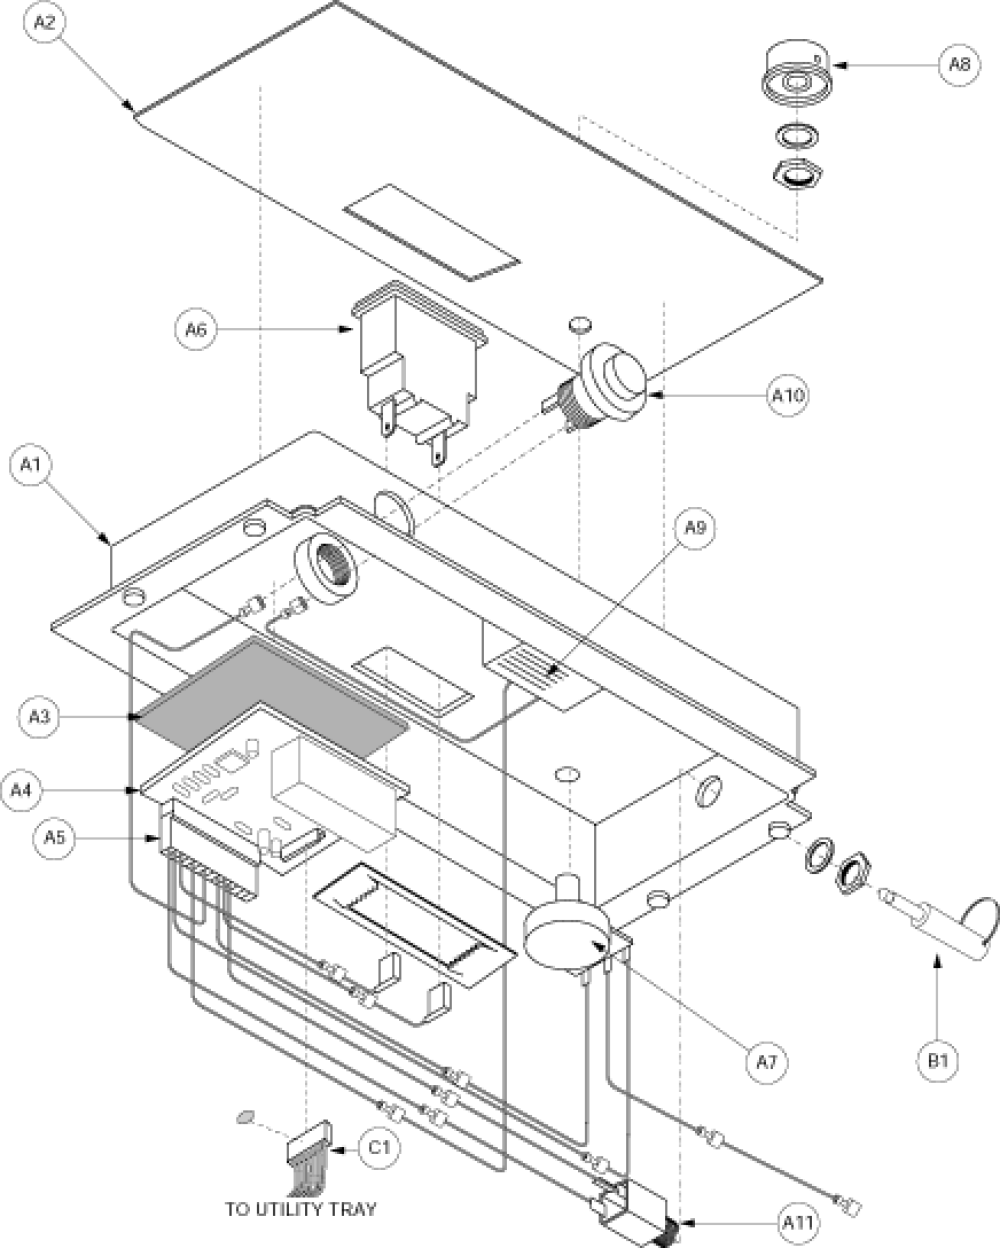 Electronics Assembly - Console Gen. 1 parts diagram